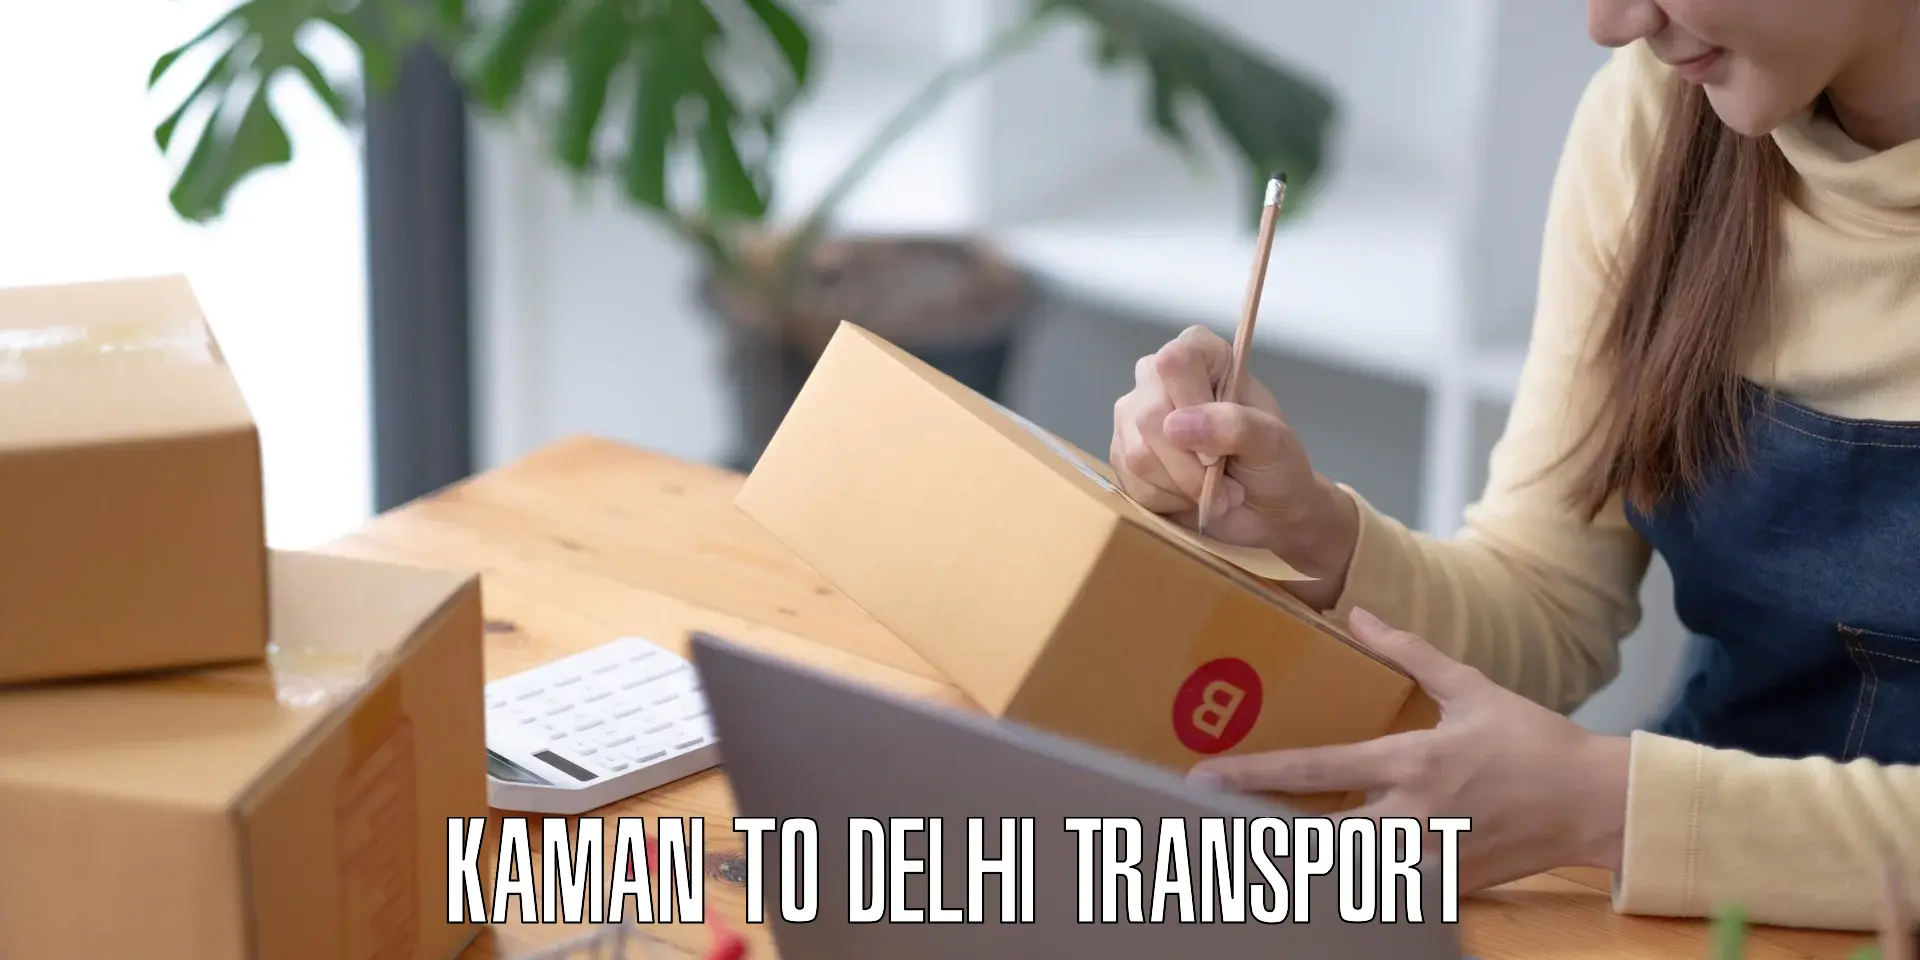 Intercity goods transport in Kaman to IIT Delhi